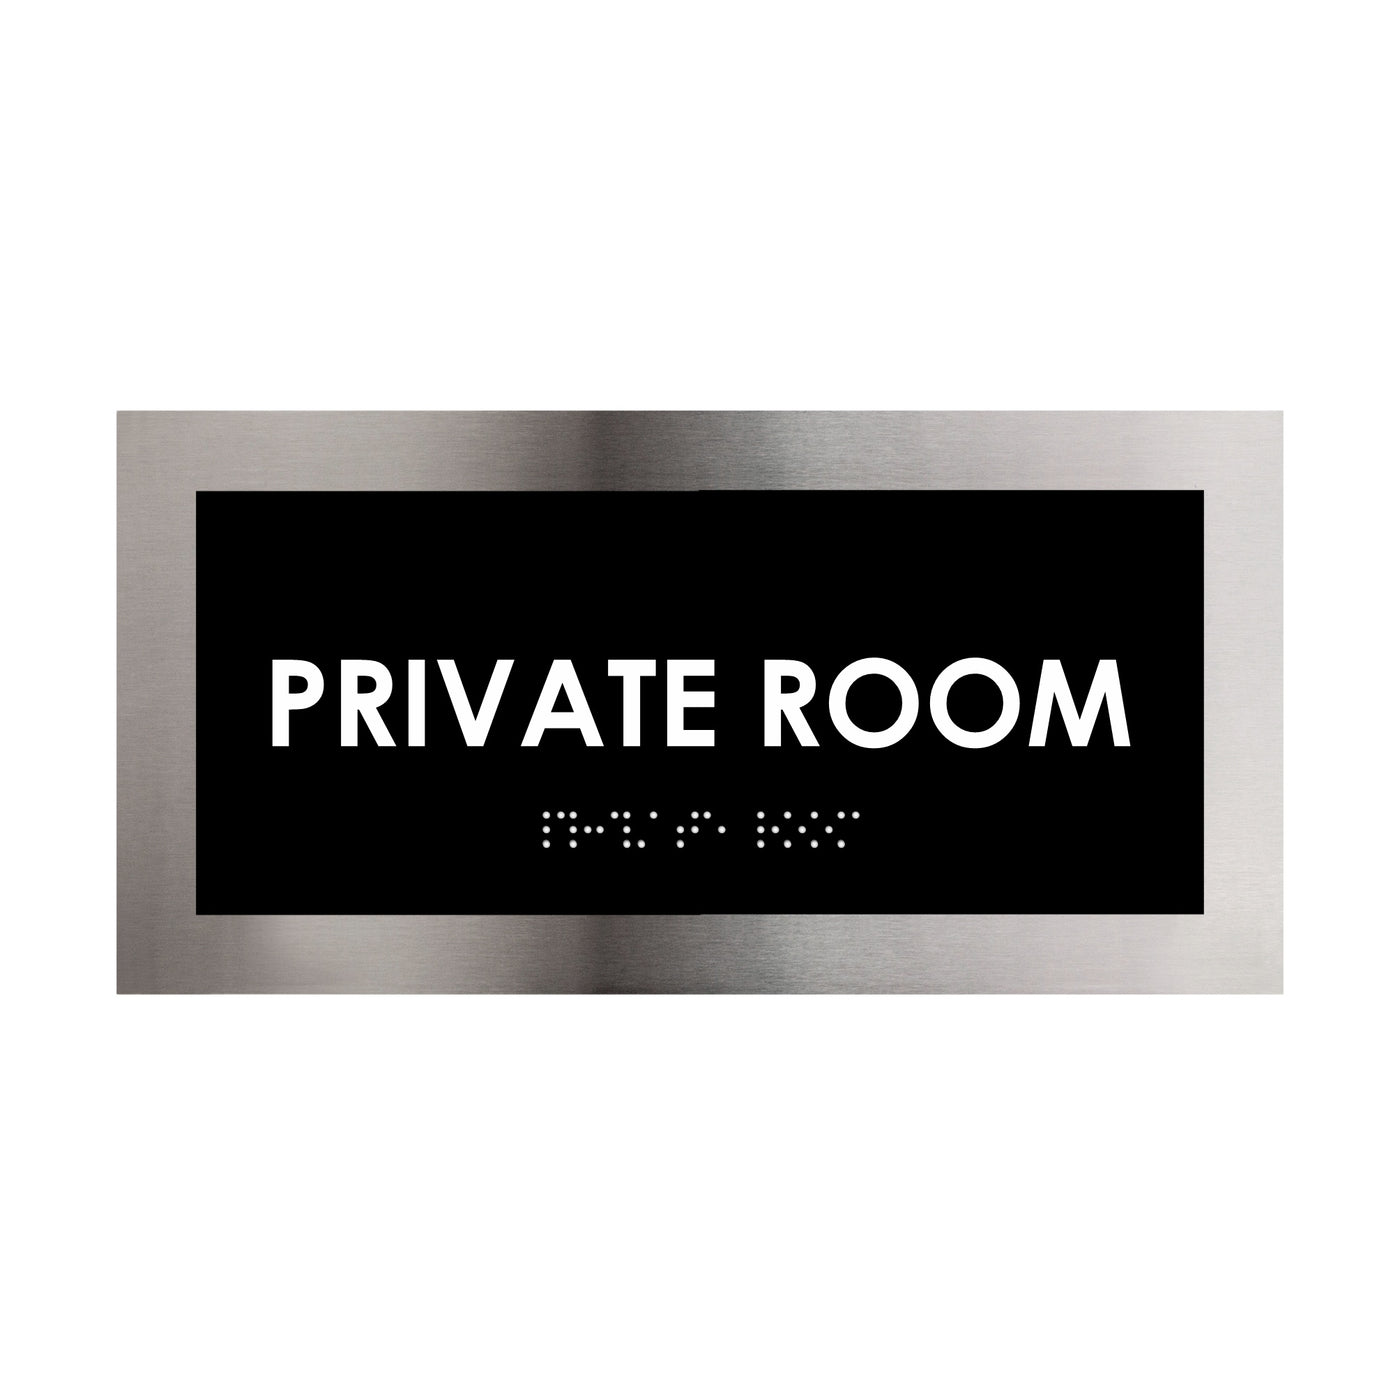 Door Signs - Private Room Door Sign - Stainless Steel Plate - "Modern" Design